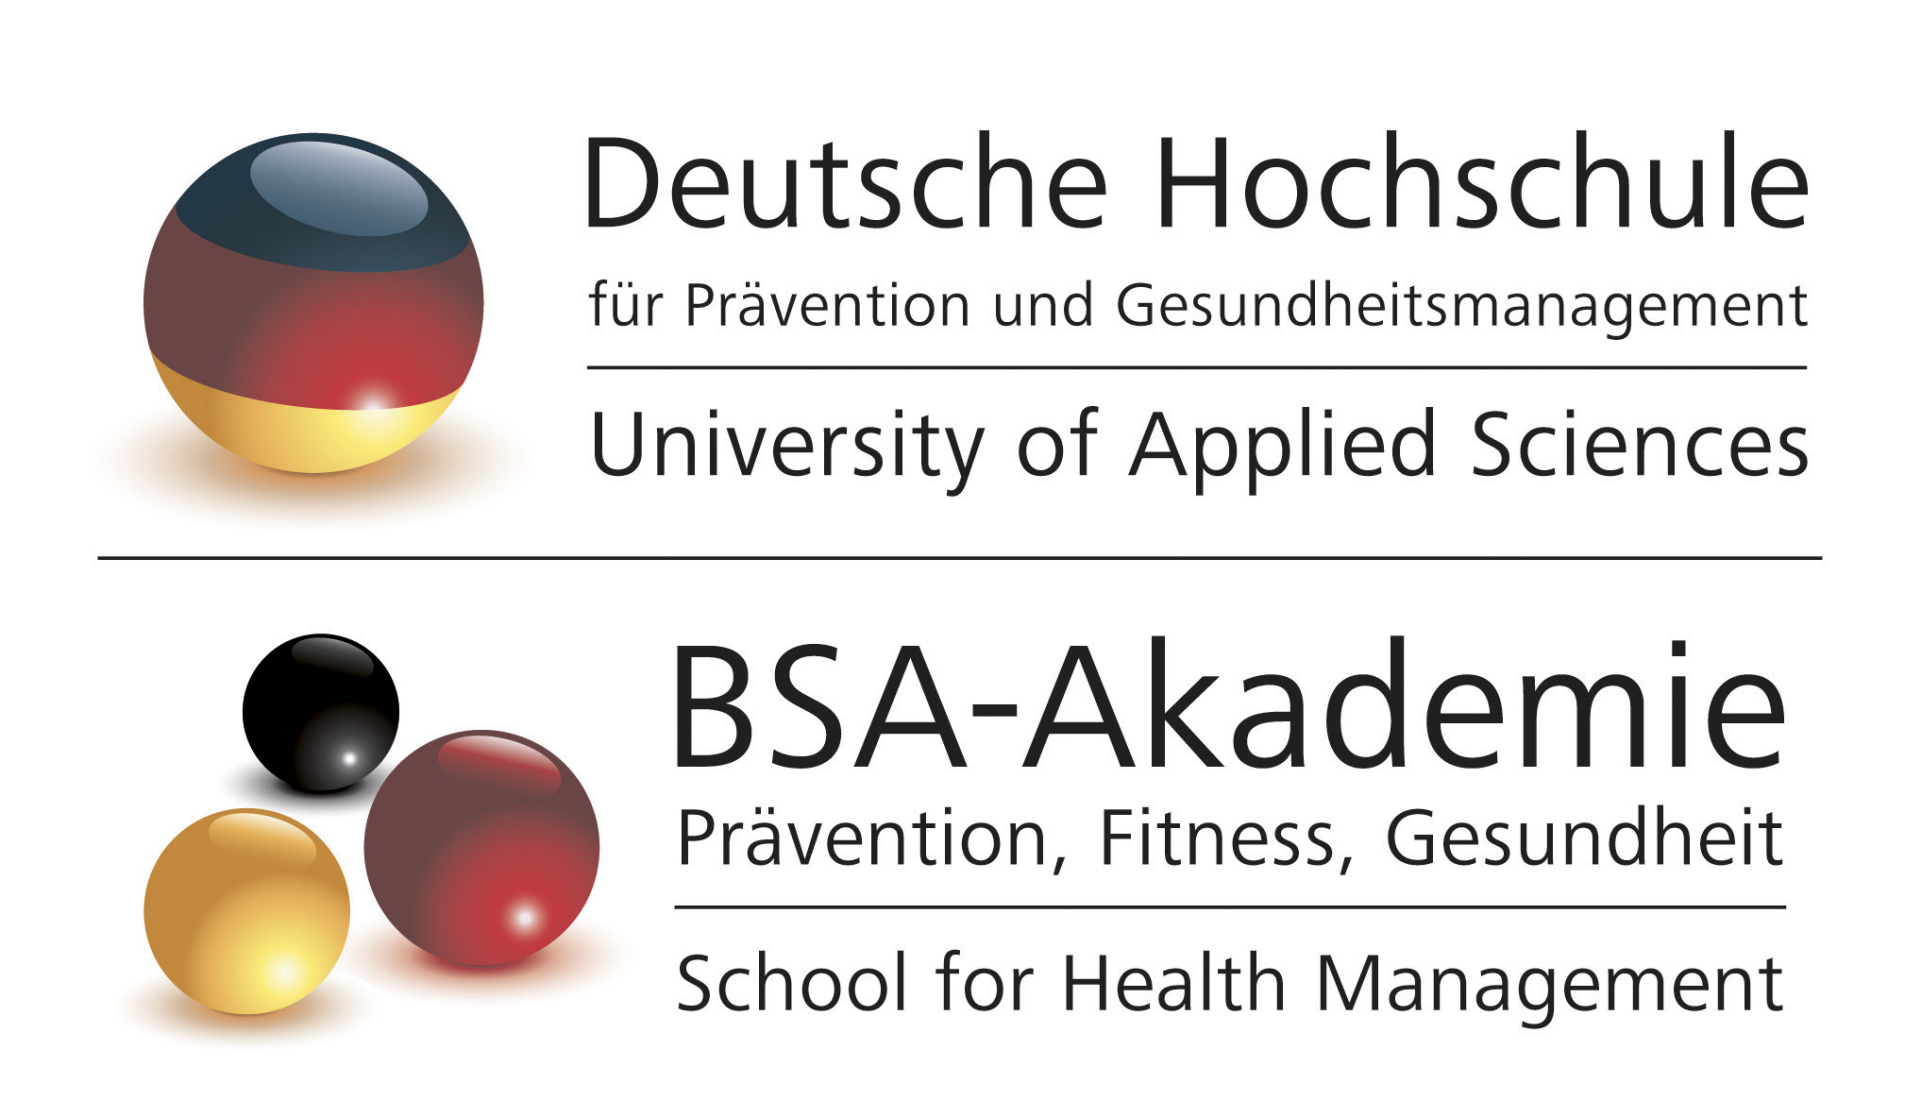 Deutsche Hochschule für Prävention
und Gesundheitsmanagement / BSA-Akademie